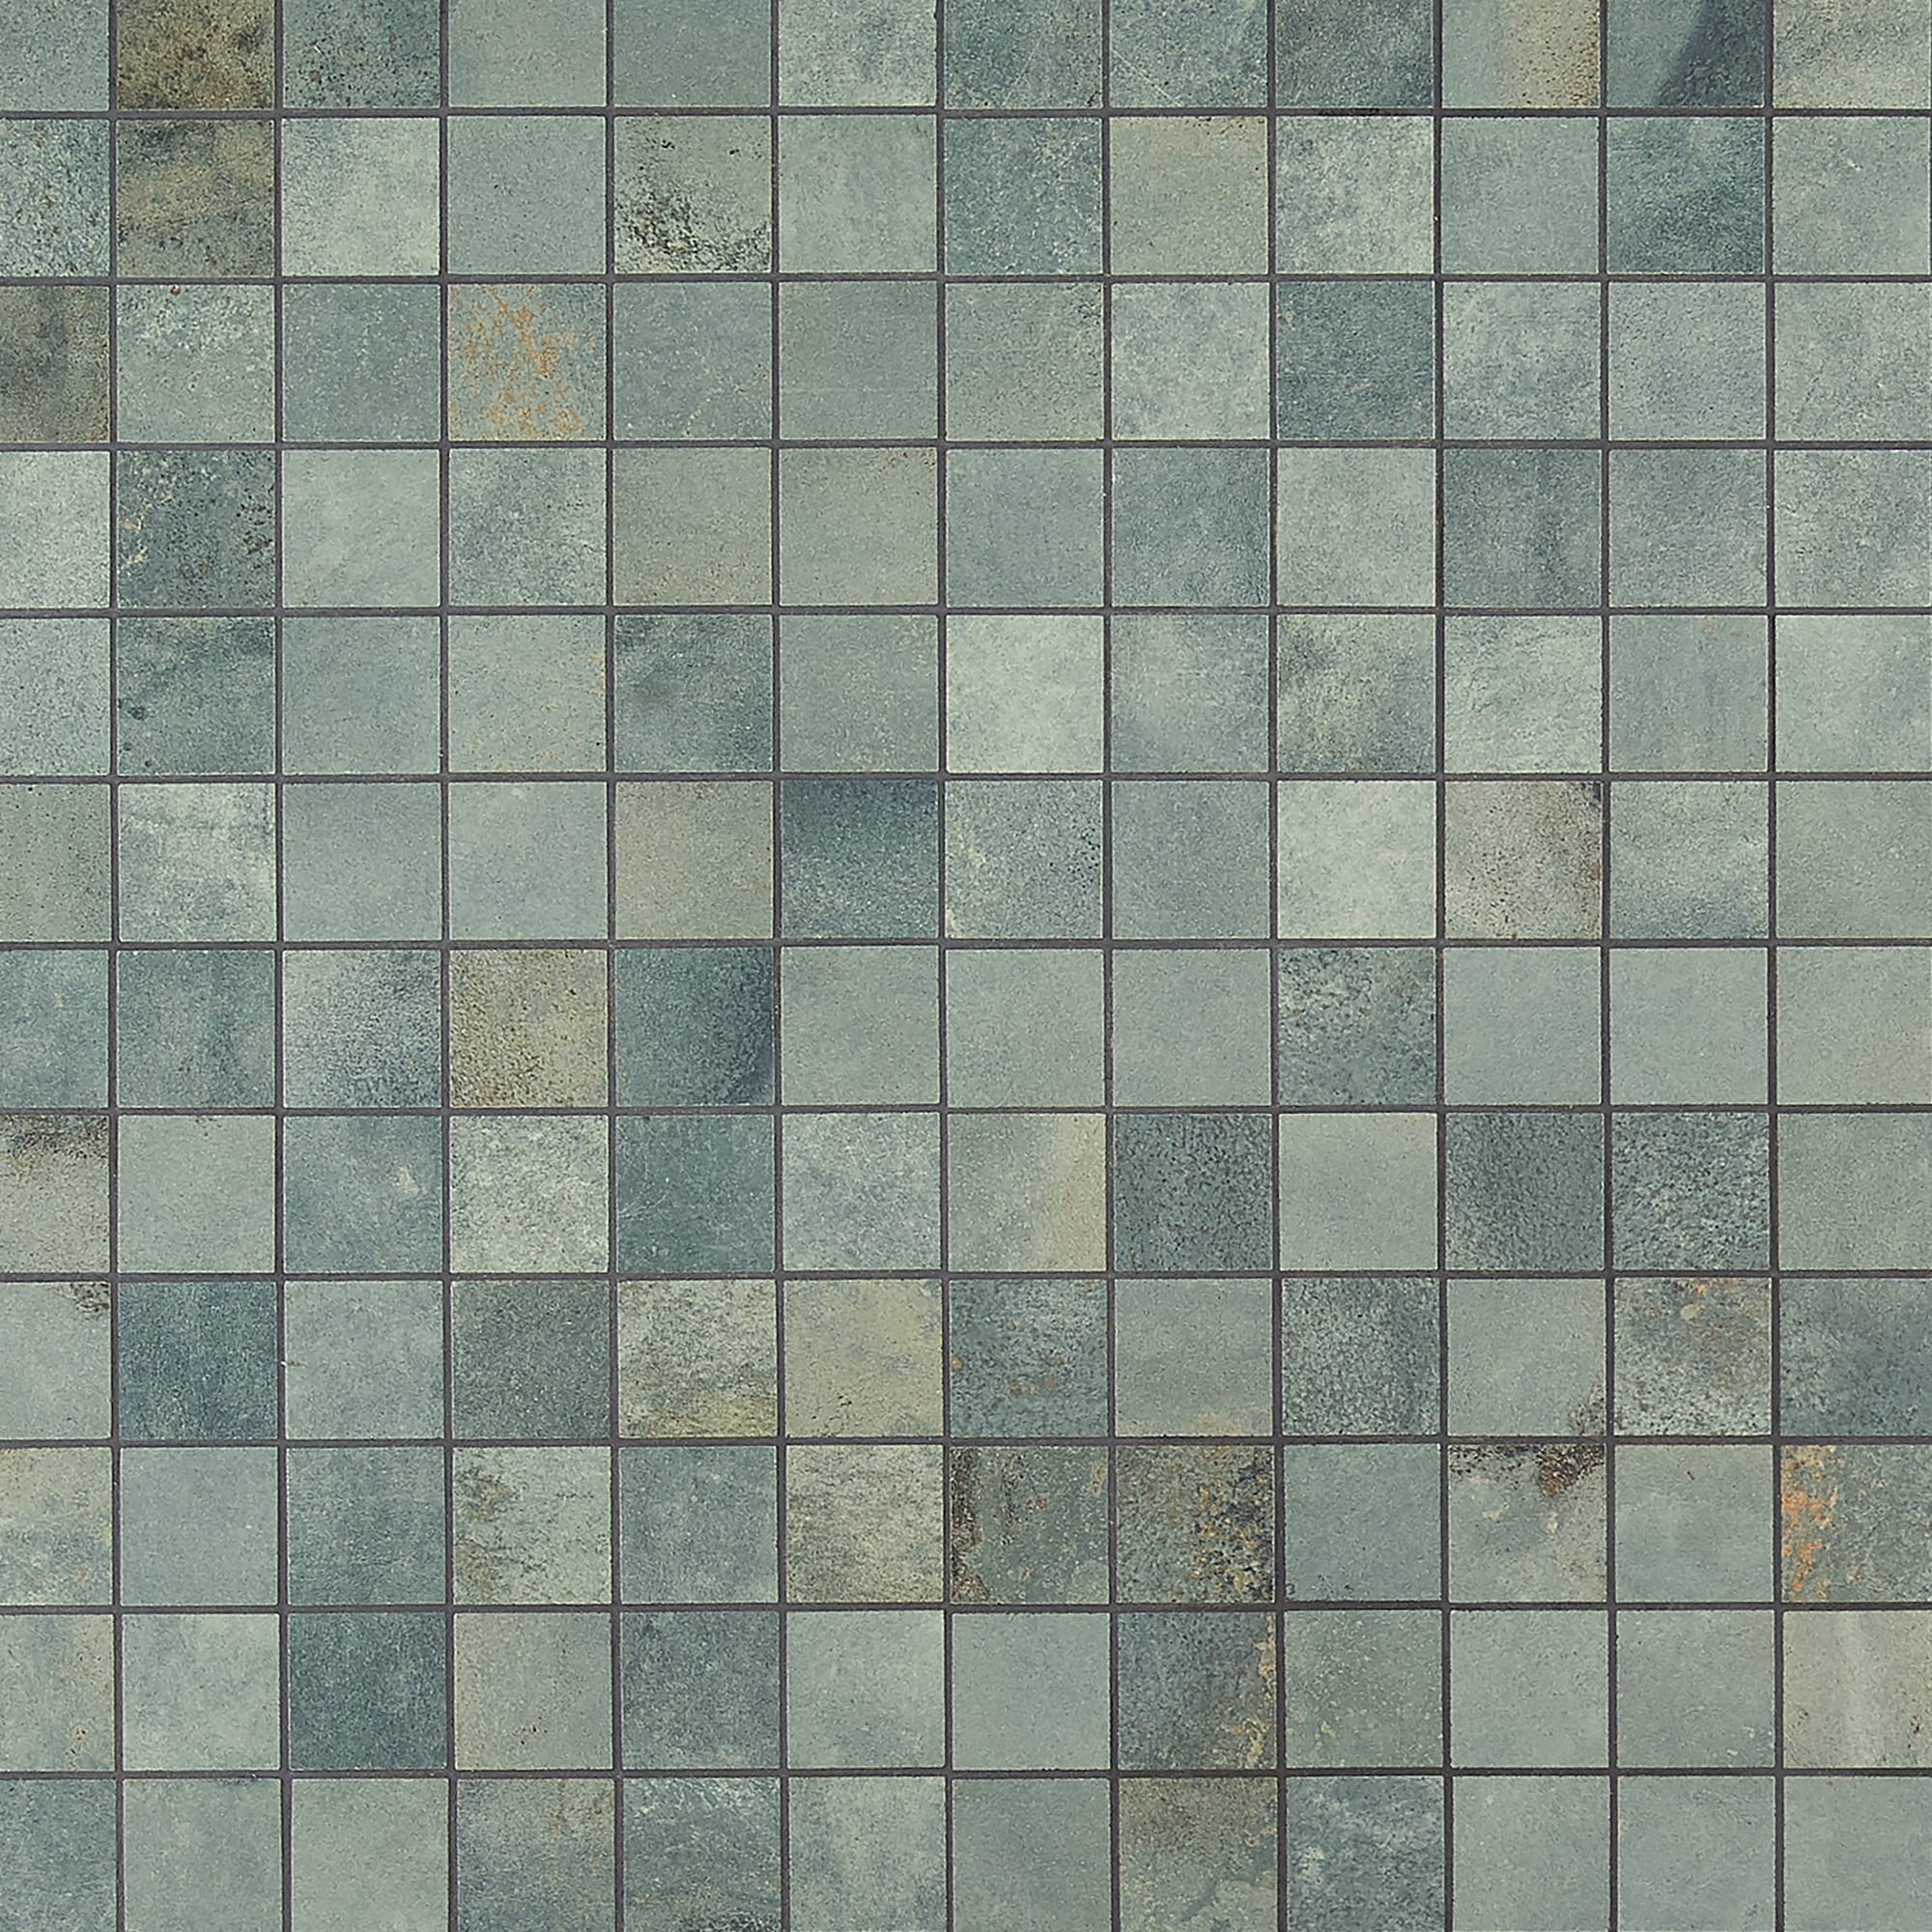 Checkered floor tile -  España